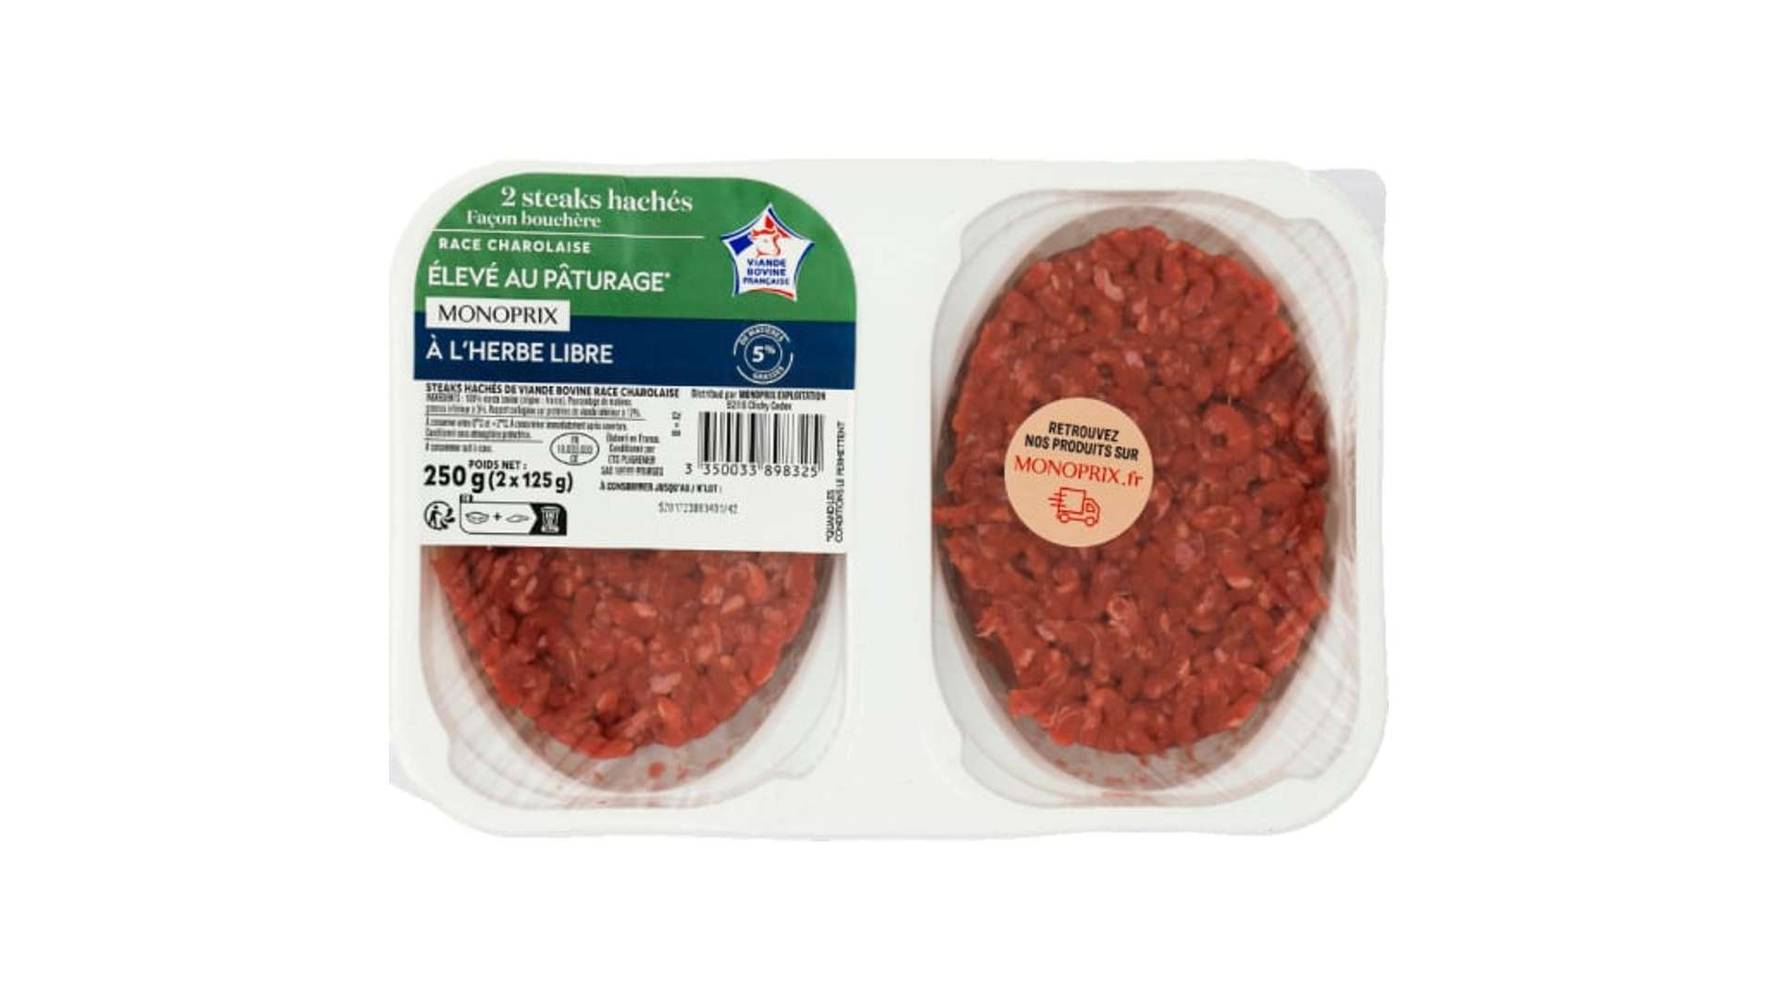 Monoprix Steak haché de boeuf facon bouchère 5% mat. gr. La barquette de 2, 250 g